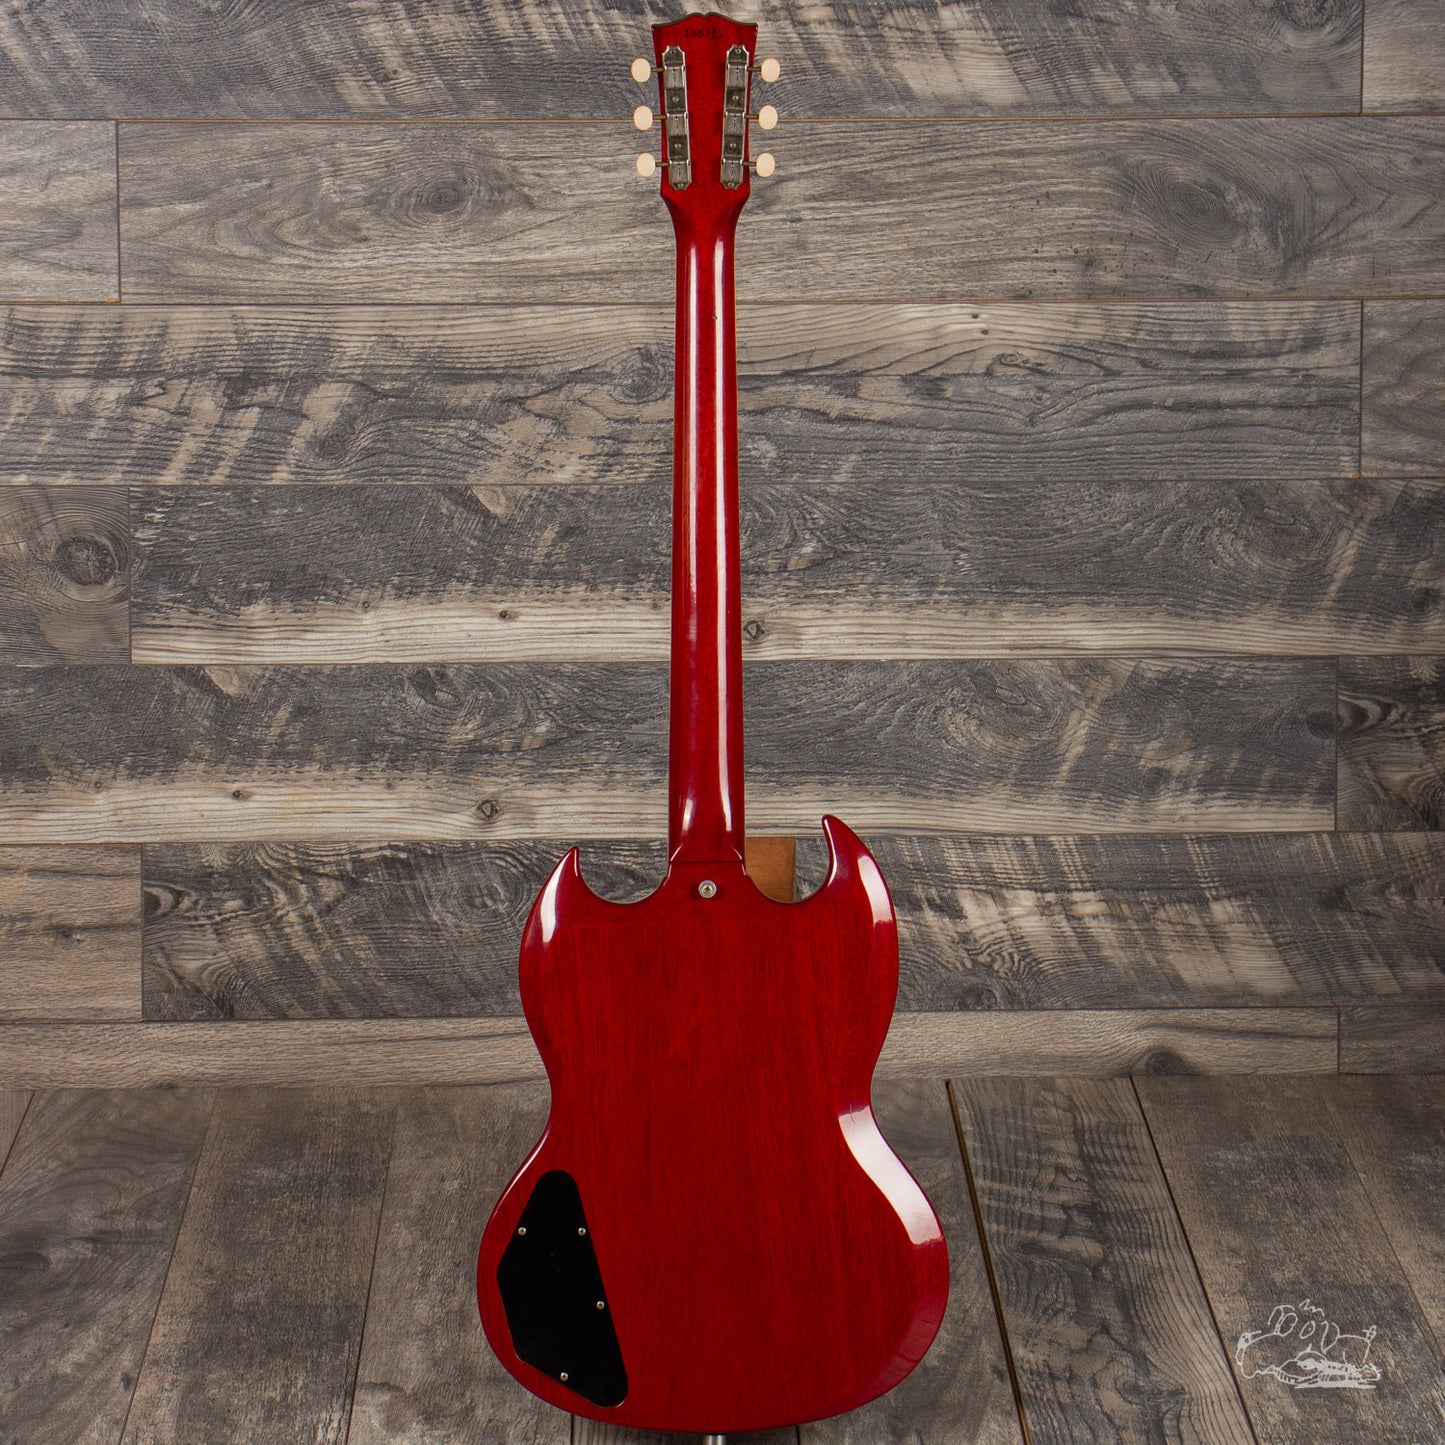 1964 Gibson SG Special